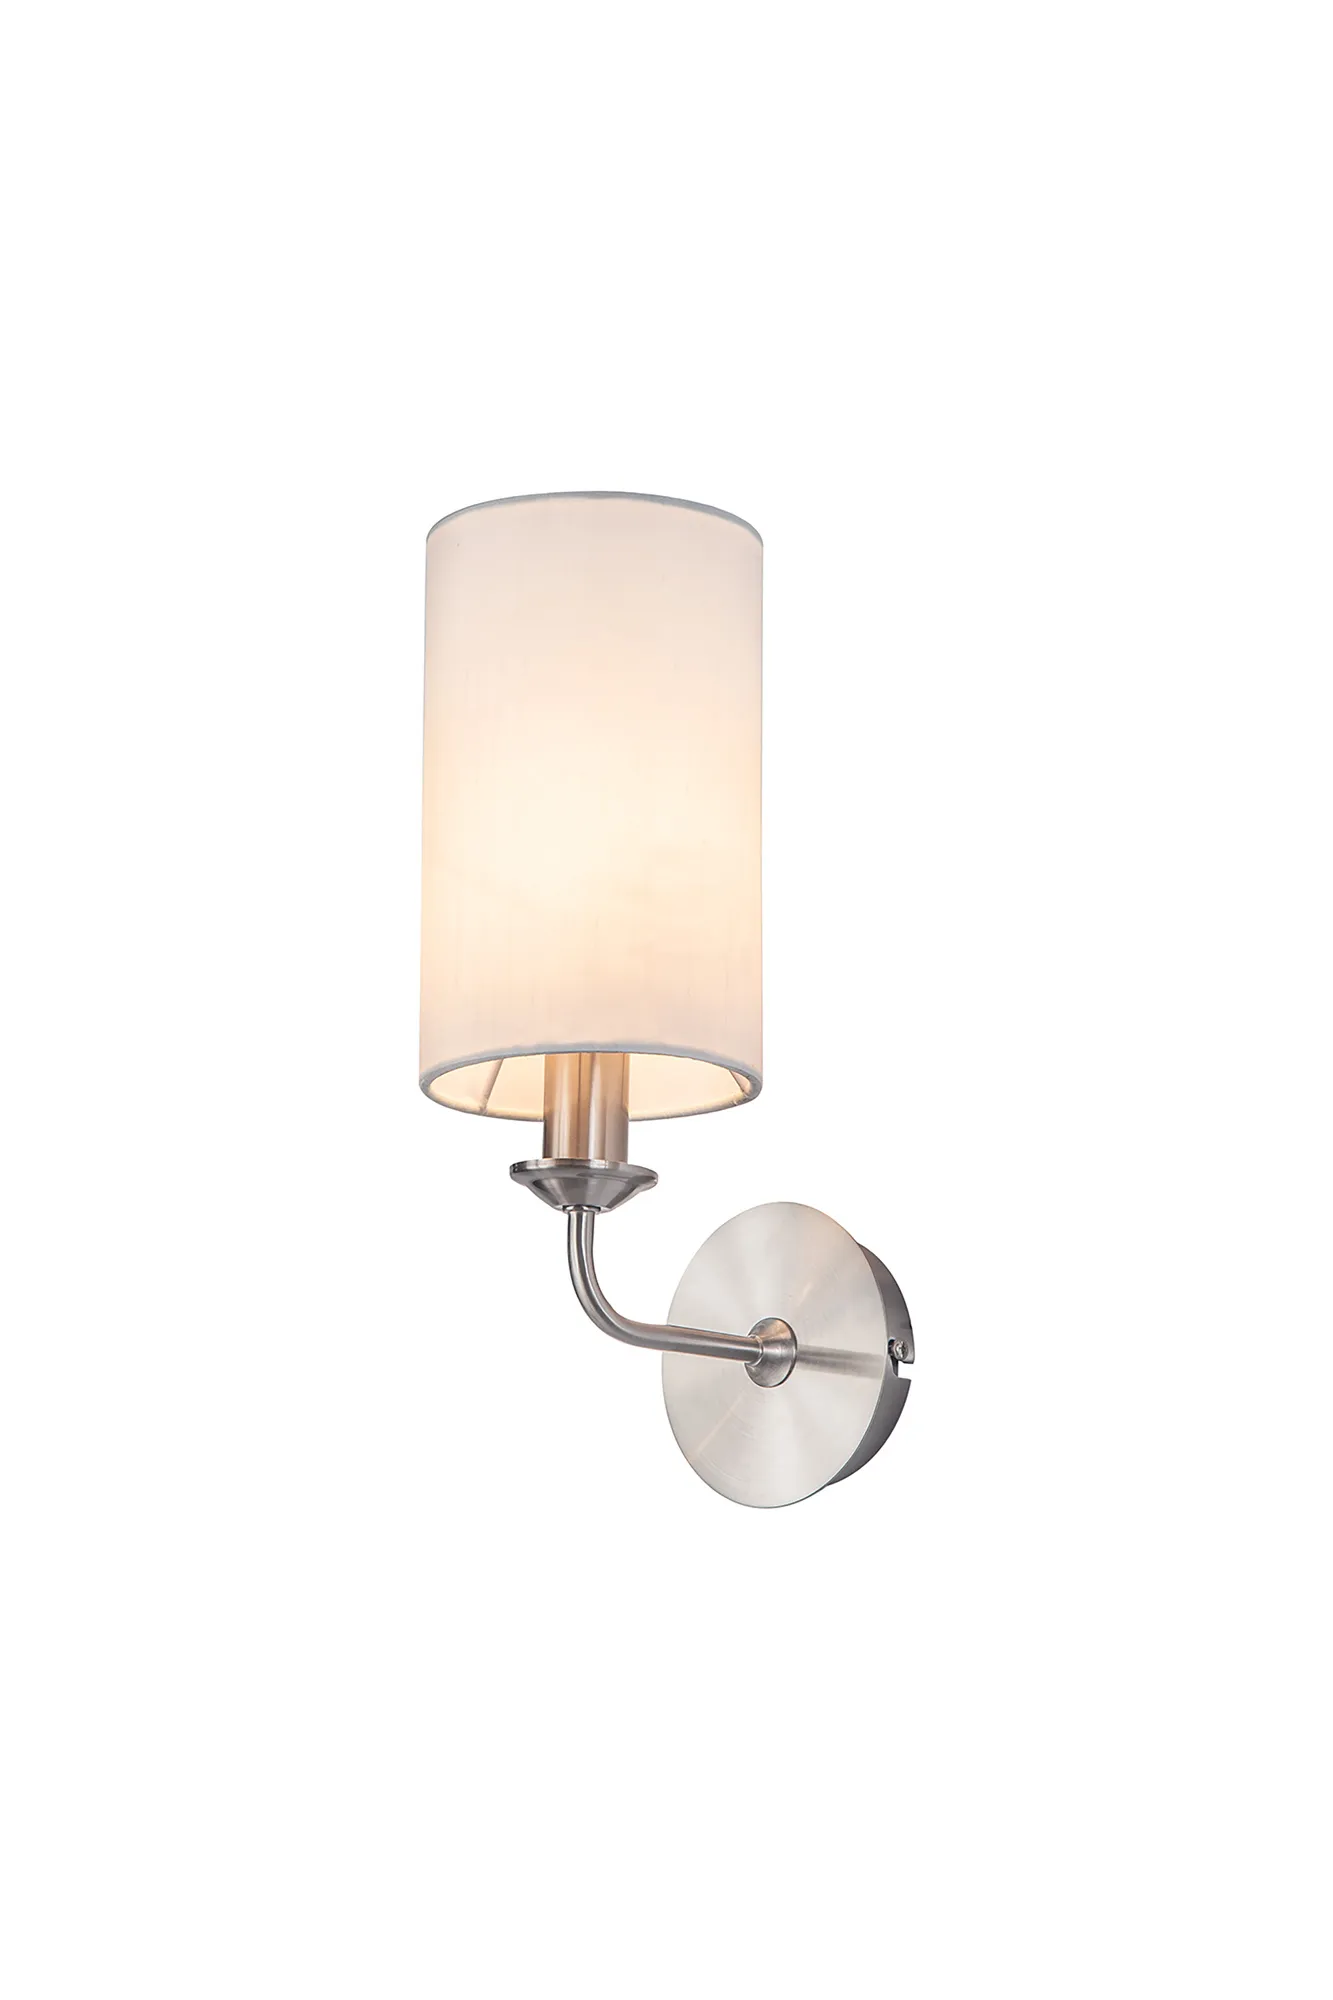 DK0055  Banyan Wall Lamp 1 Light Satin Nickel; White